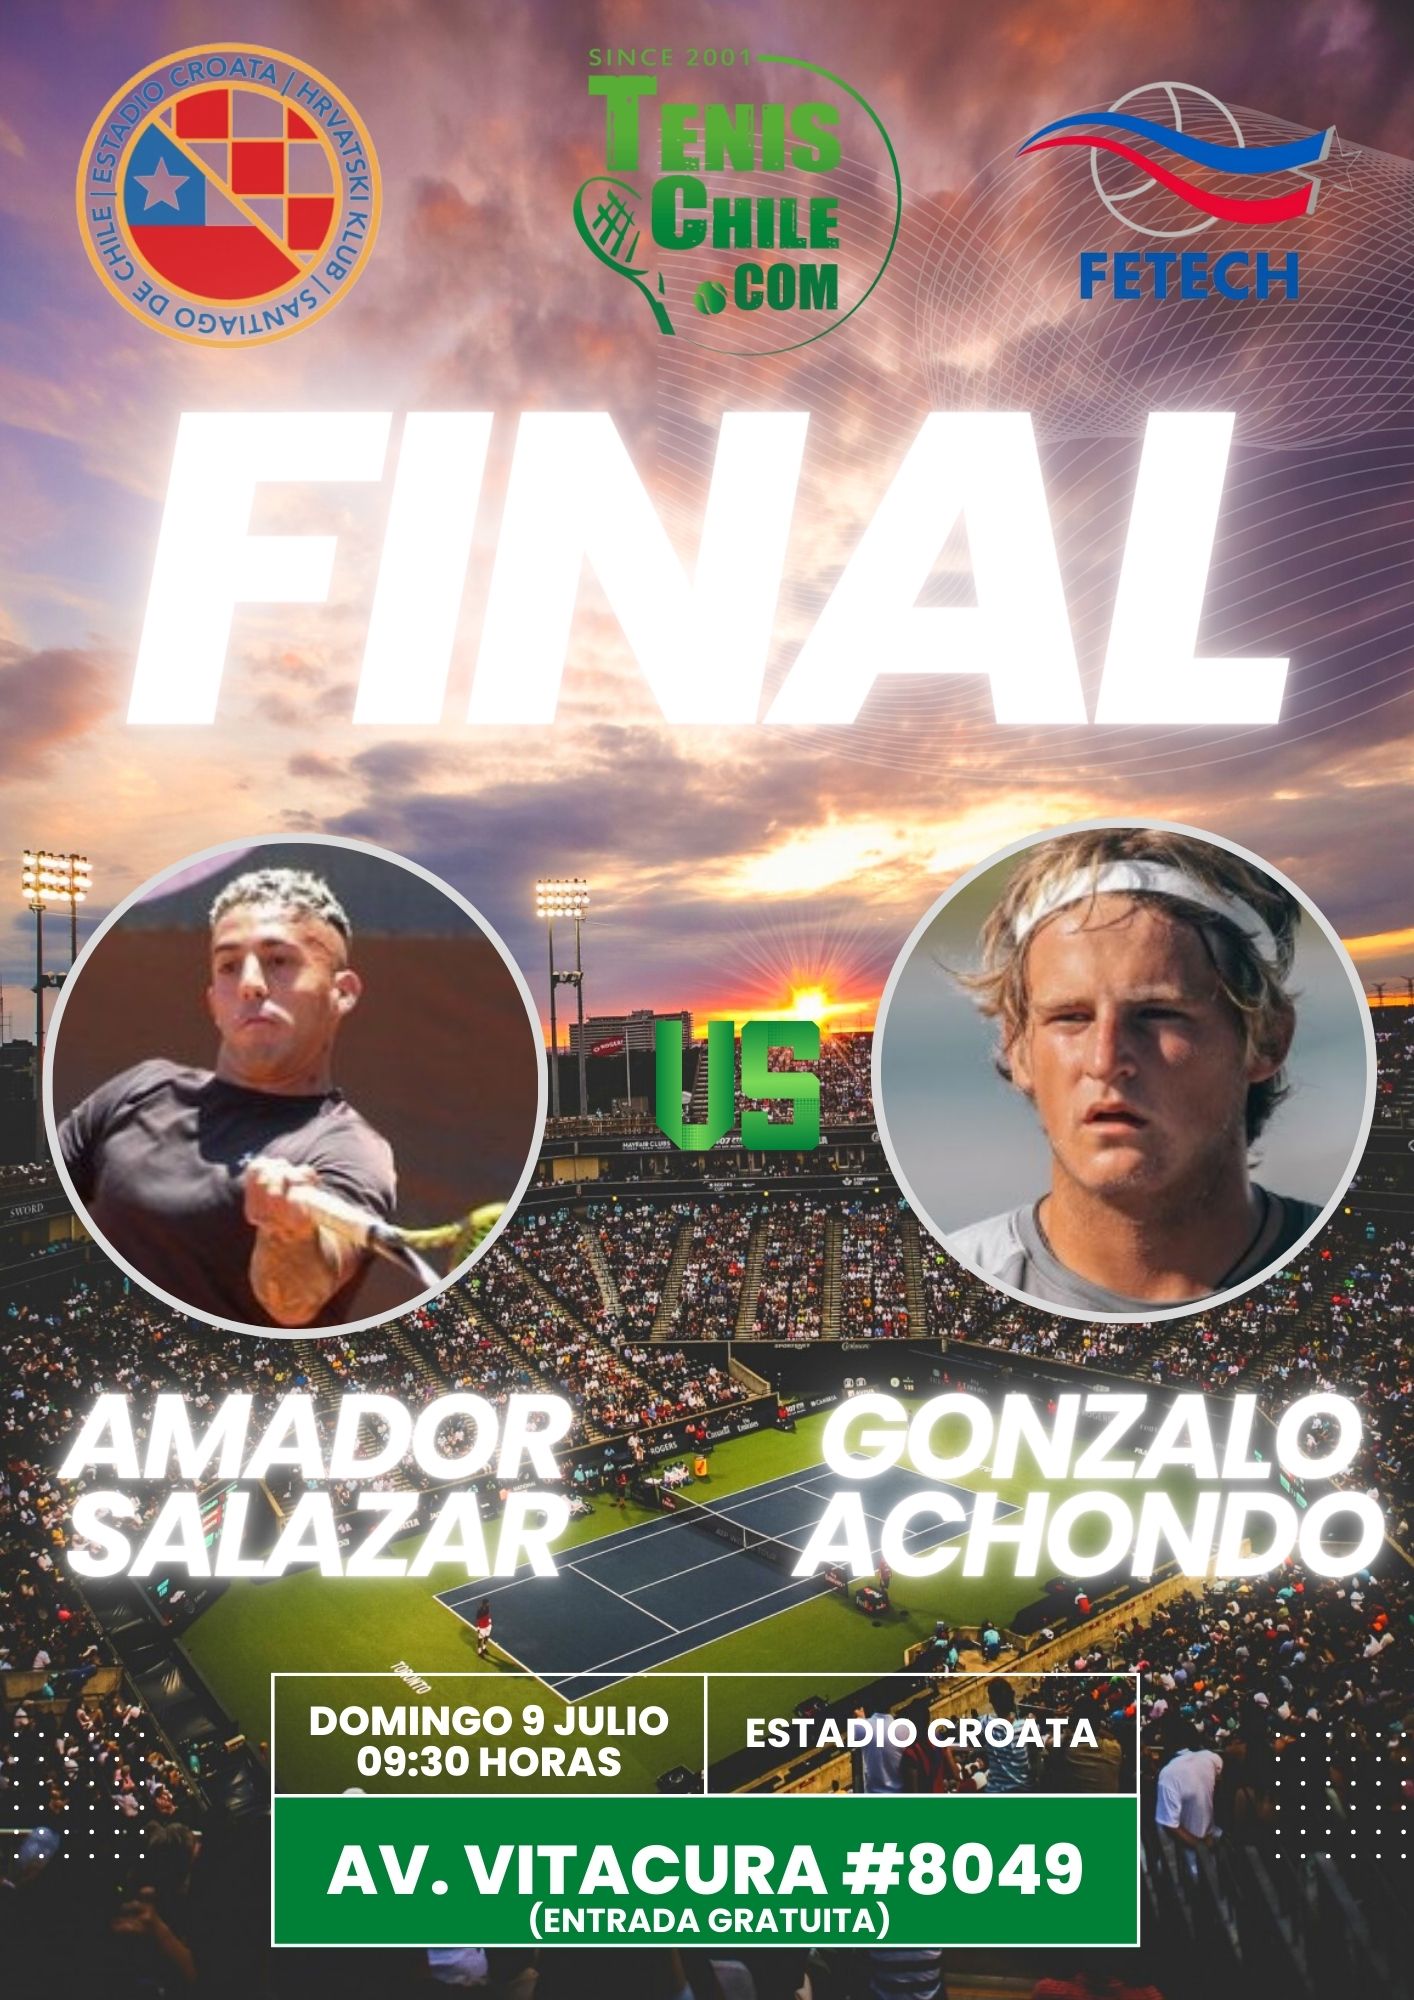 Achondo y Salazar jugarán la final de la primera etapa del Circuito Profesional